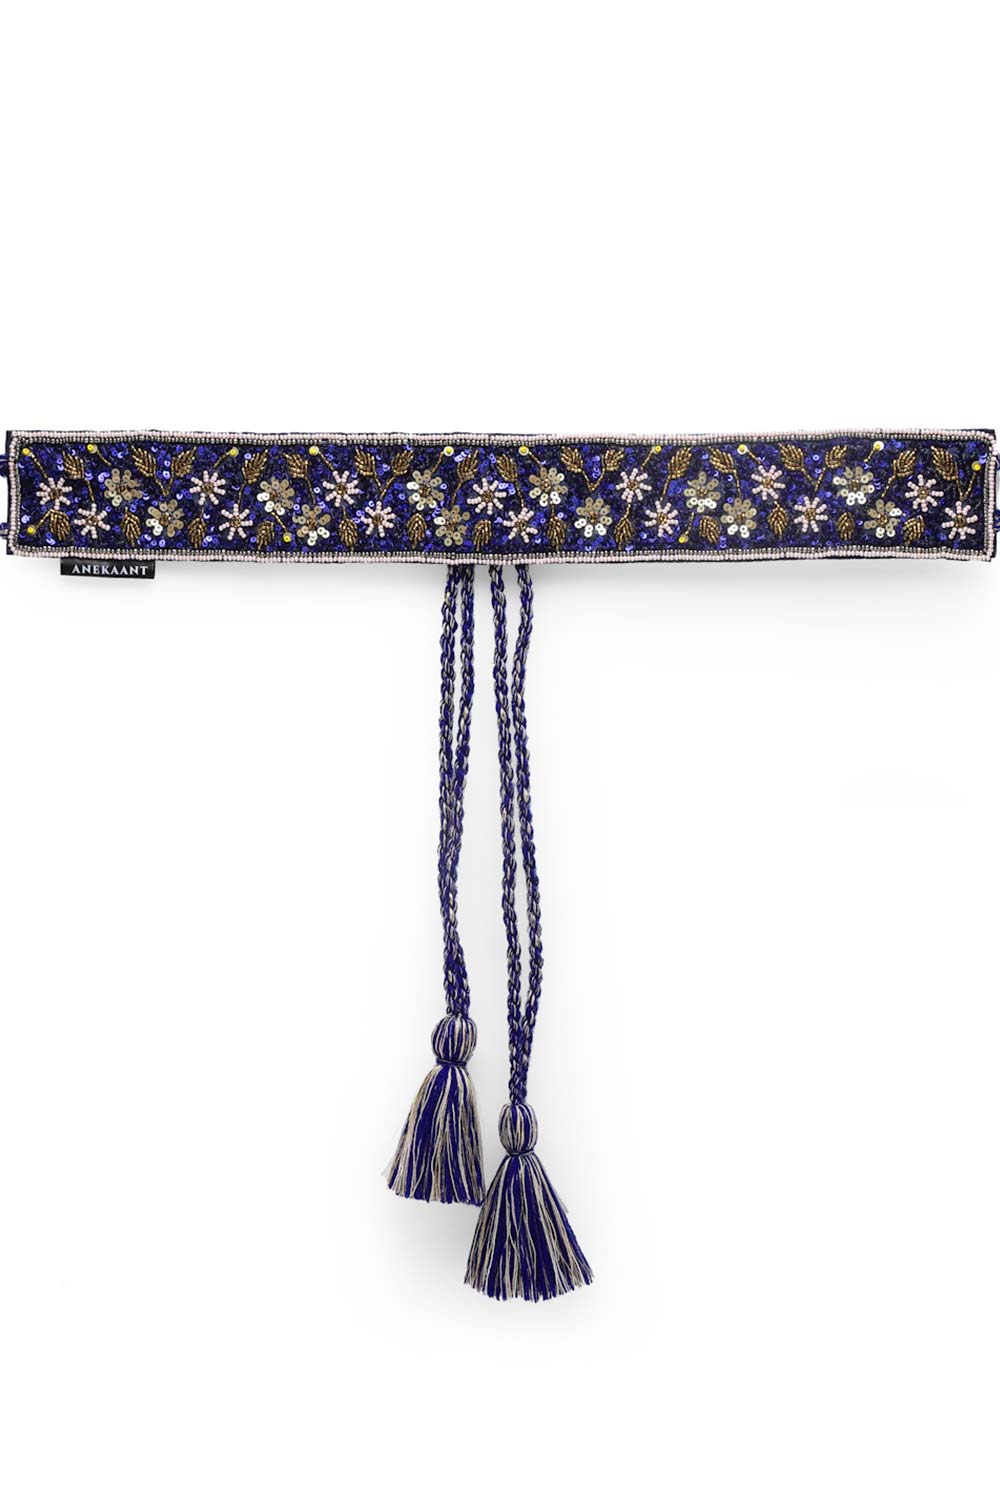 Floral Sequins Work Saree Belt in Royal Blue & Multi